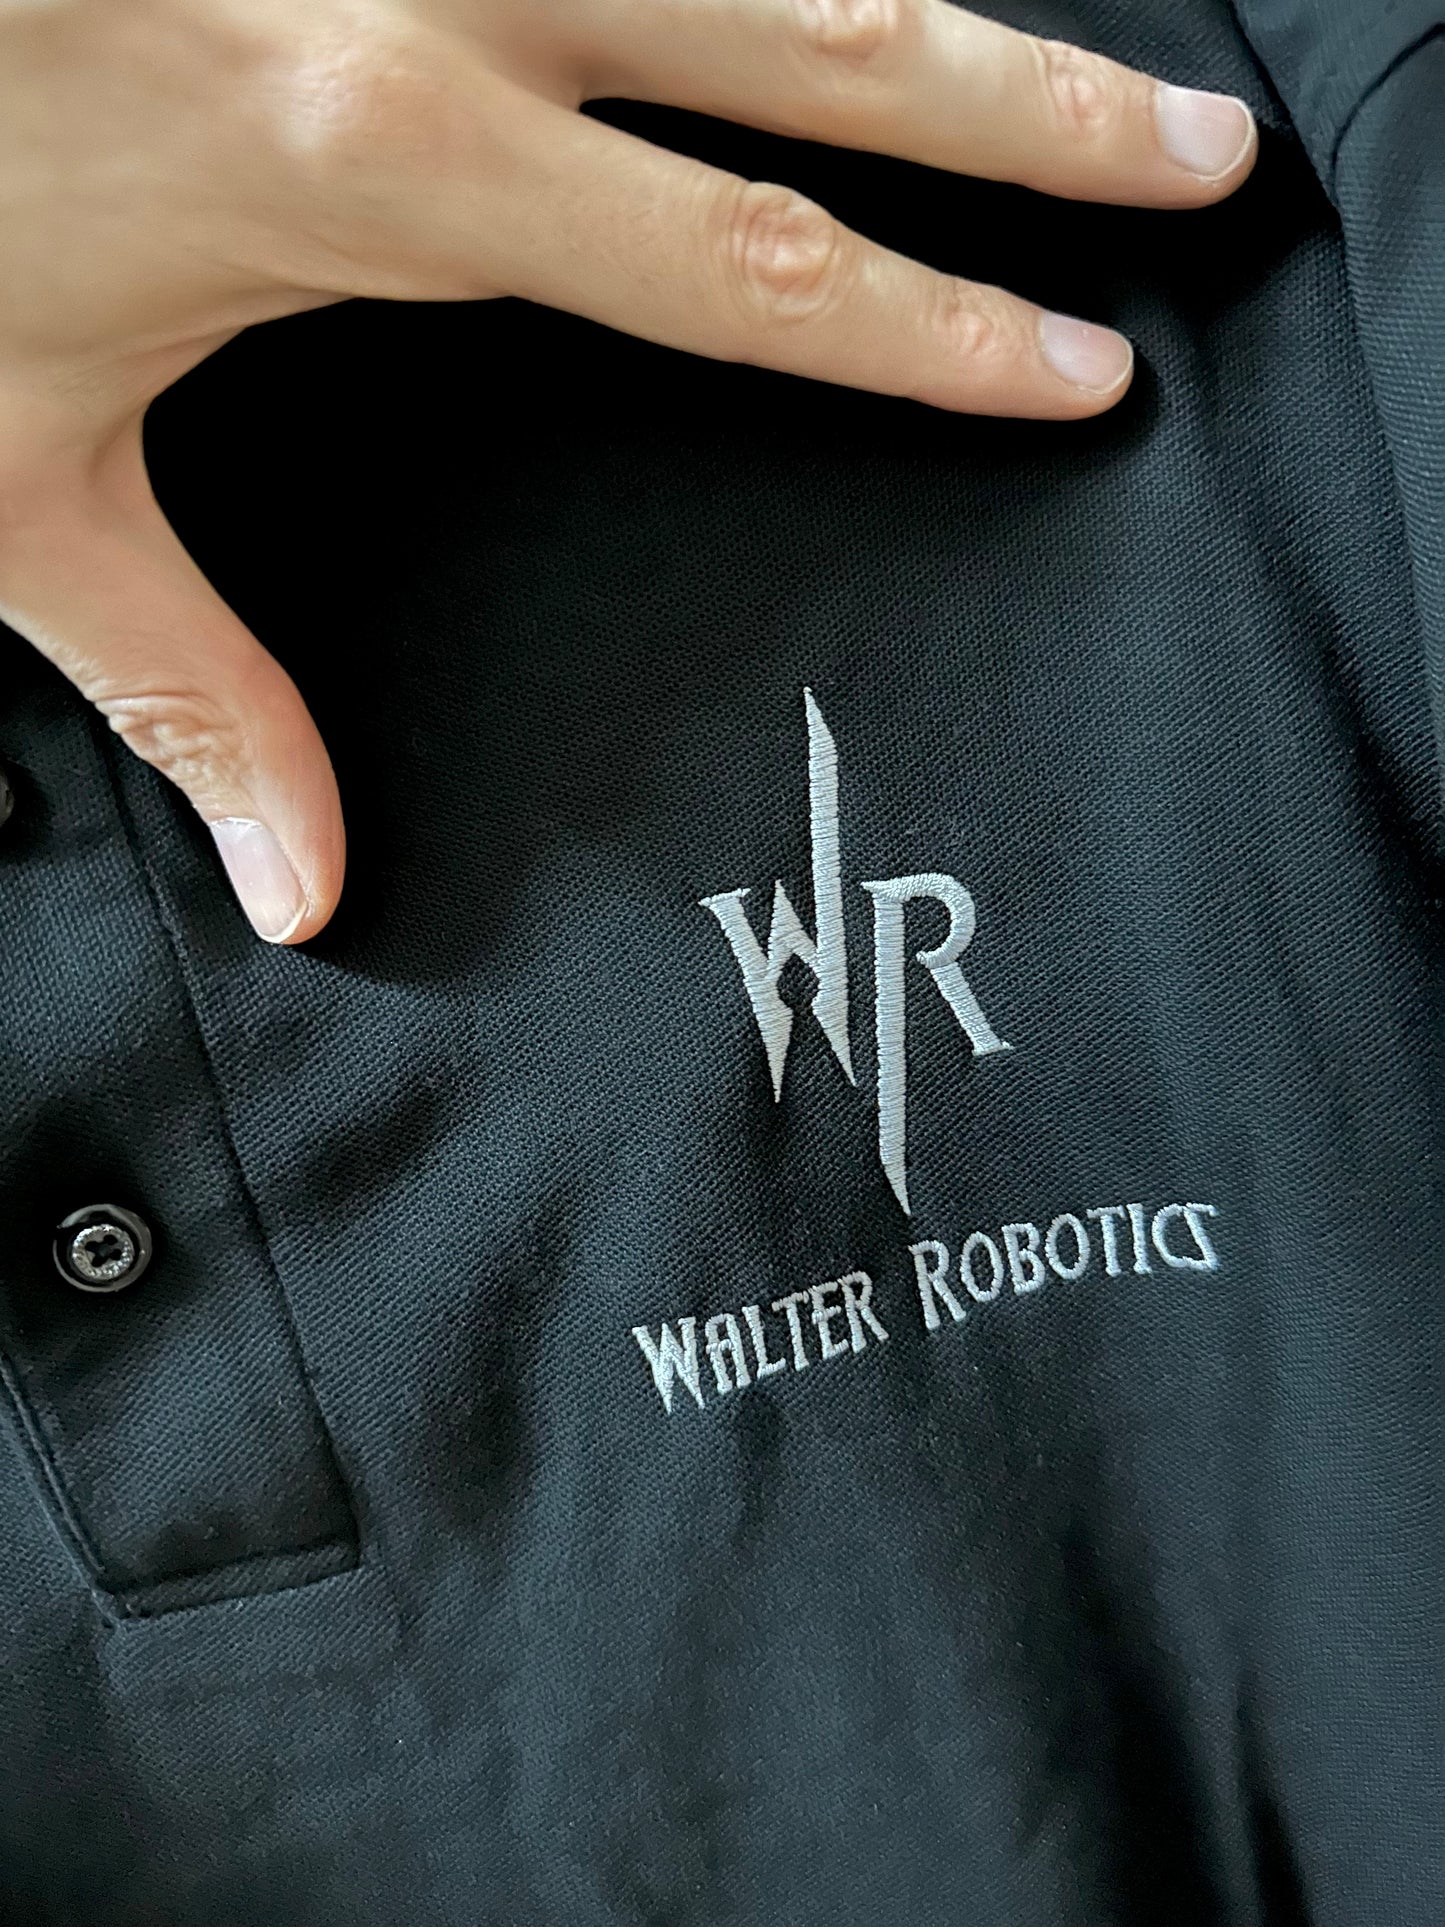 Walter Robotics Embroidered Polo Shirt